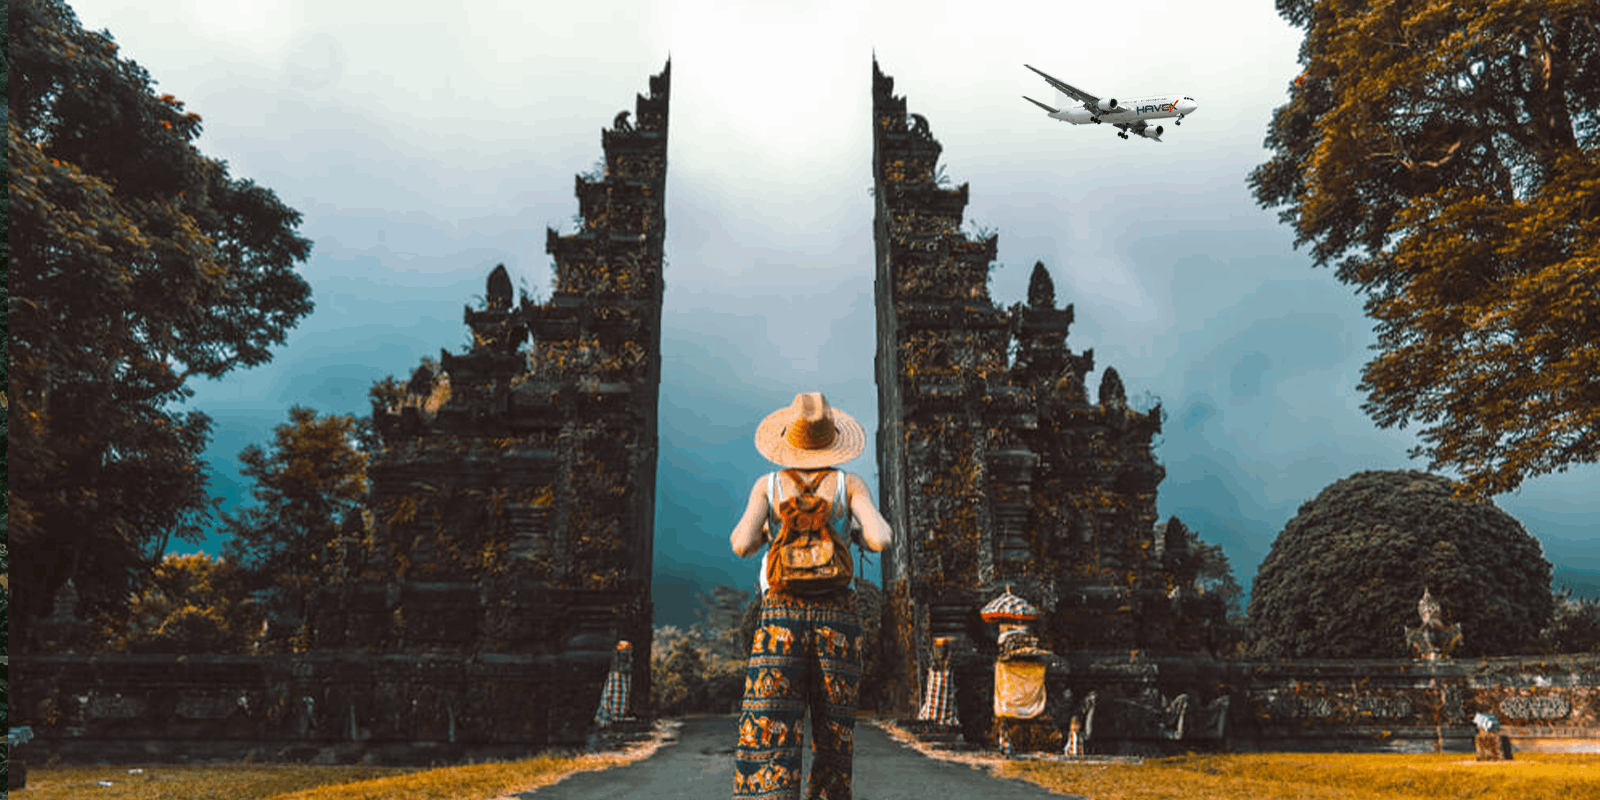 Endonezya Uçak Kargo | Endonezya Kargo